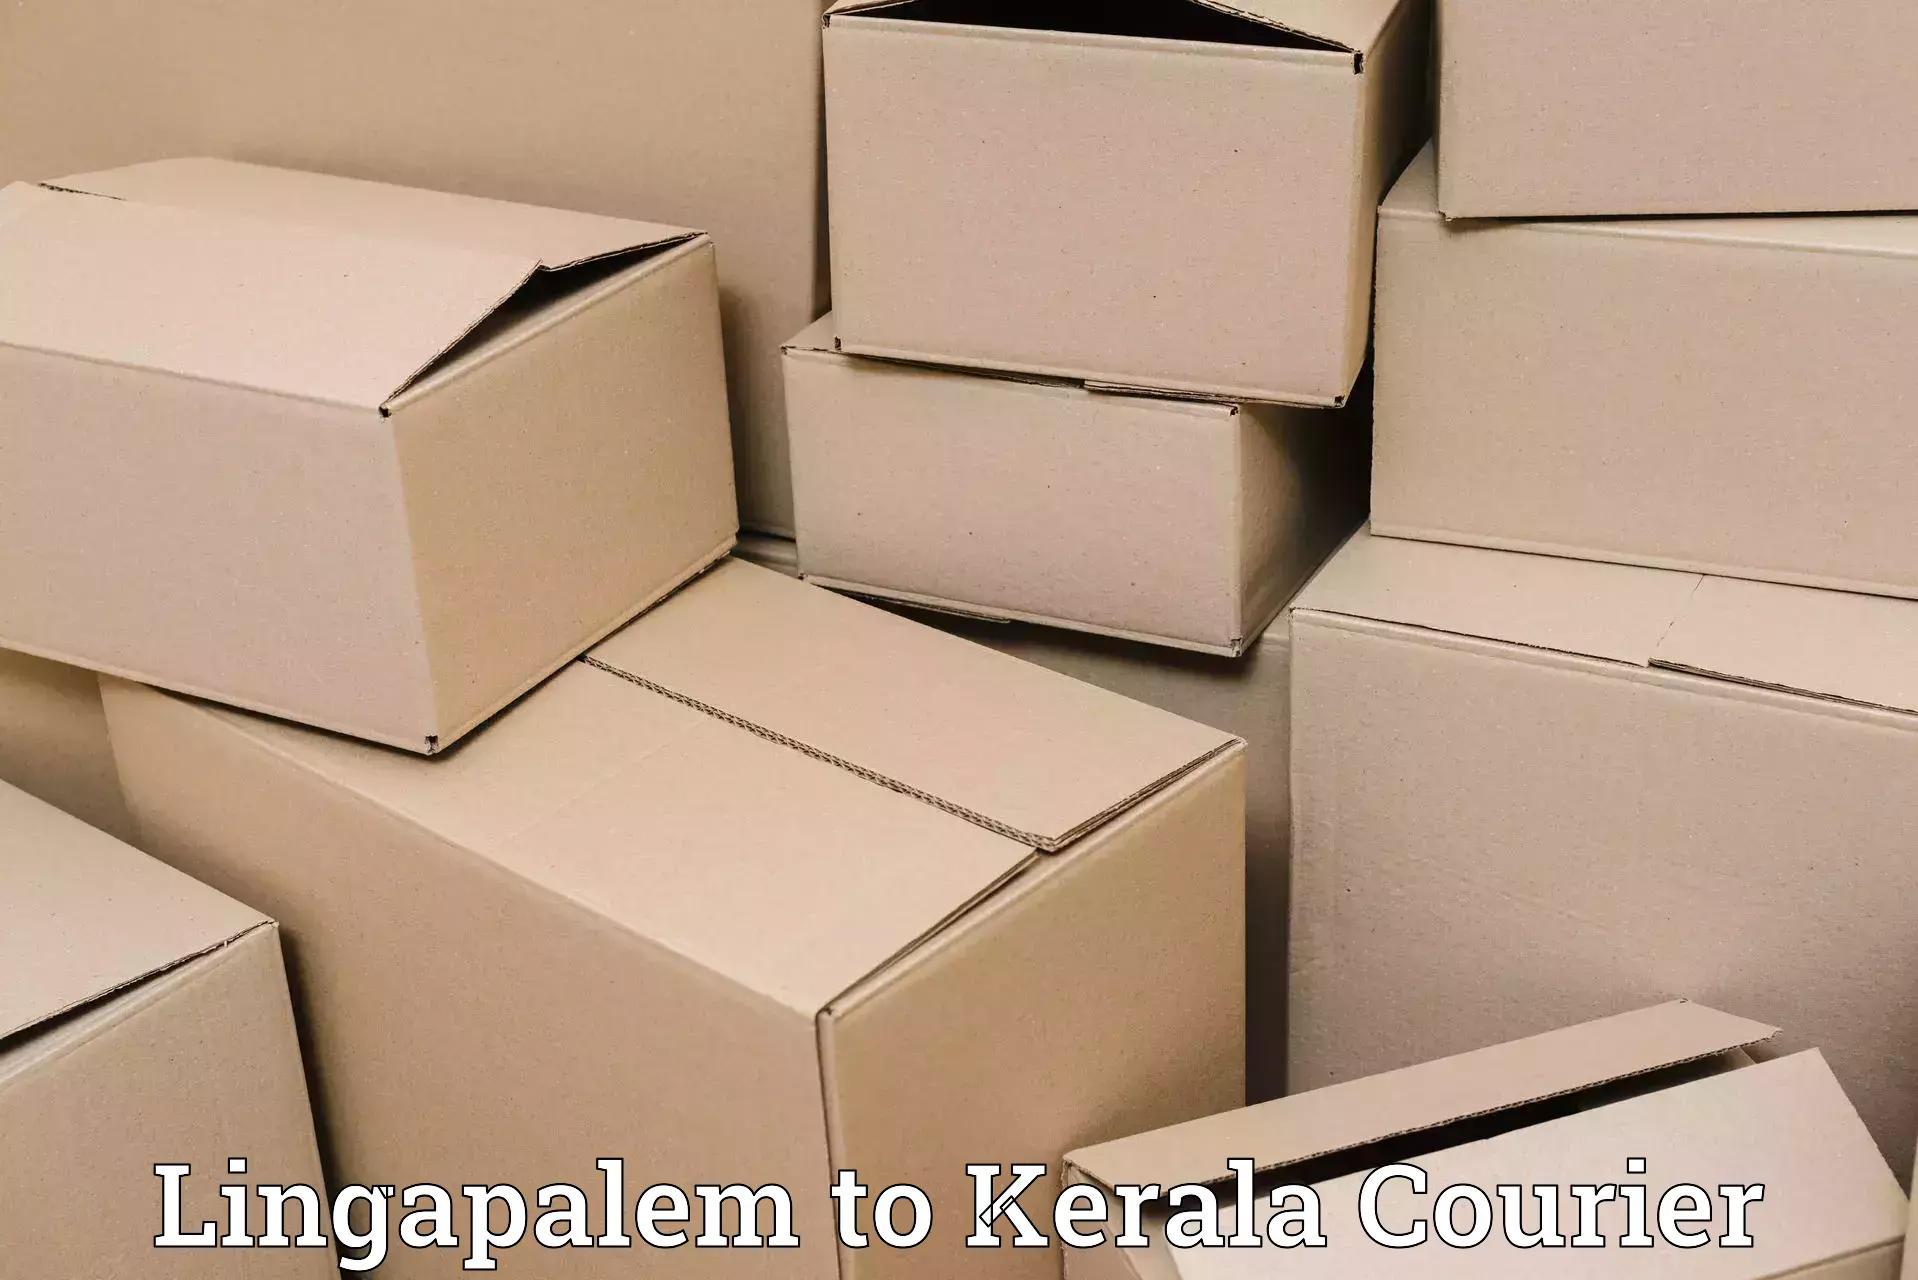 Bulk shipping discounts Lingapalem to Kunnathunad